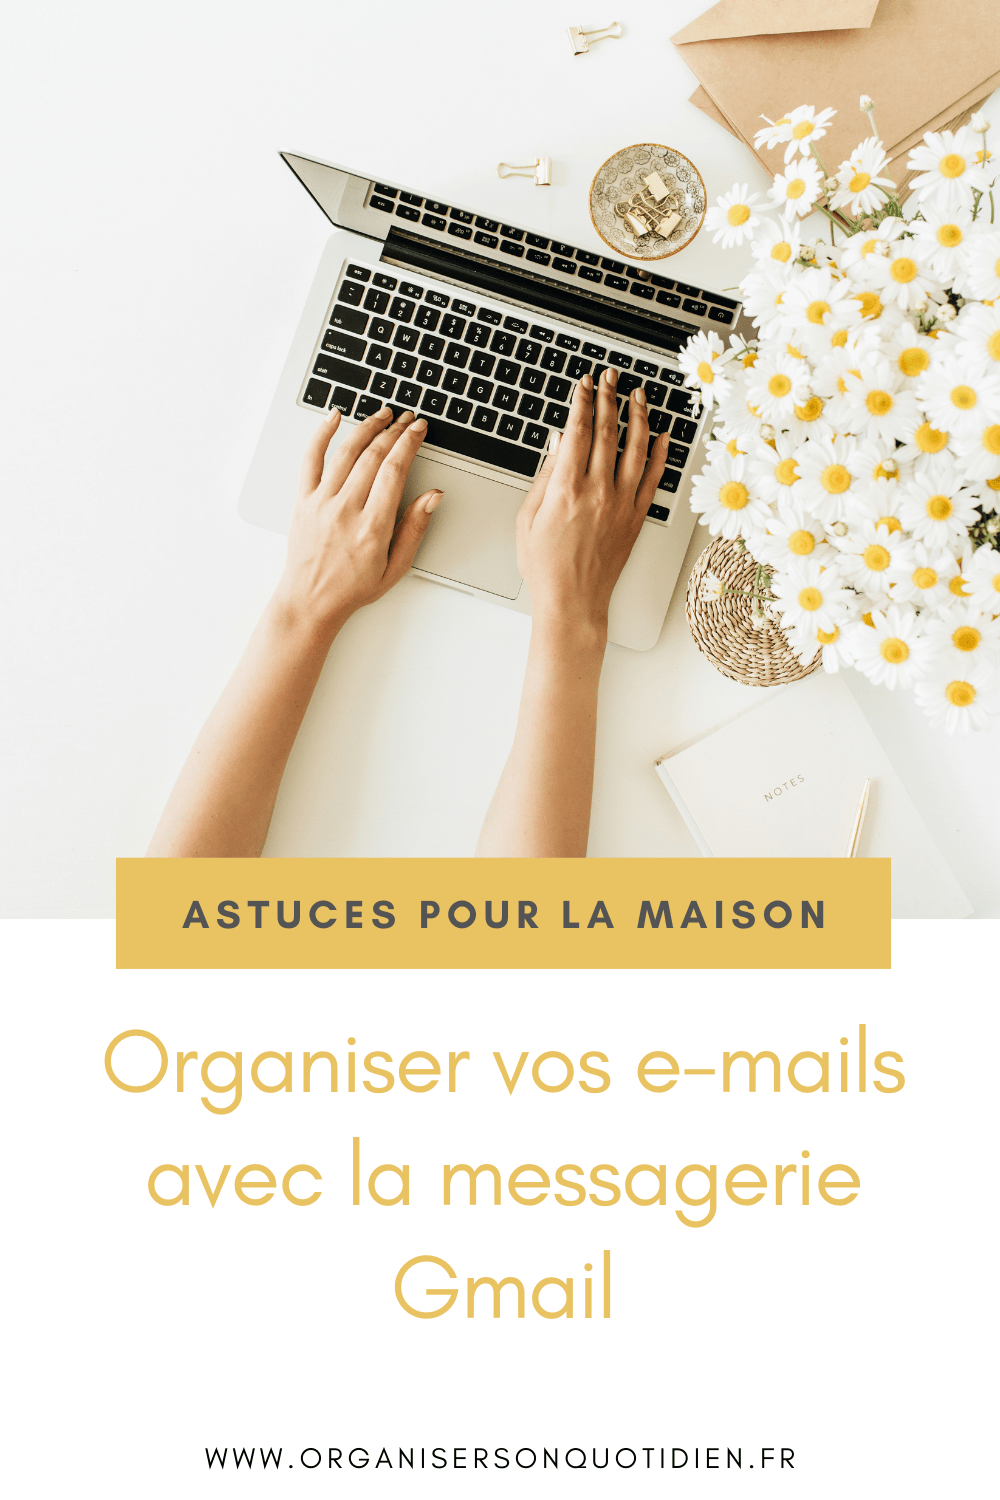 Organiser vos e-mails avec la messagerie Gmail